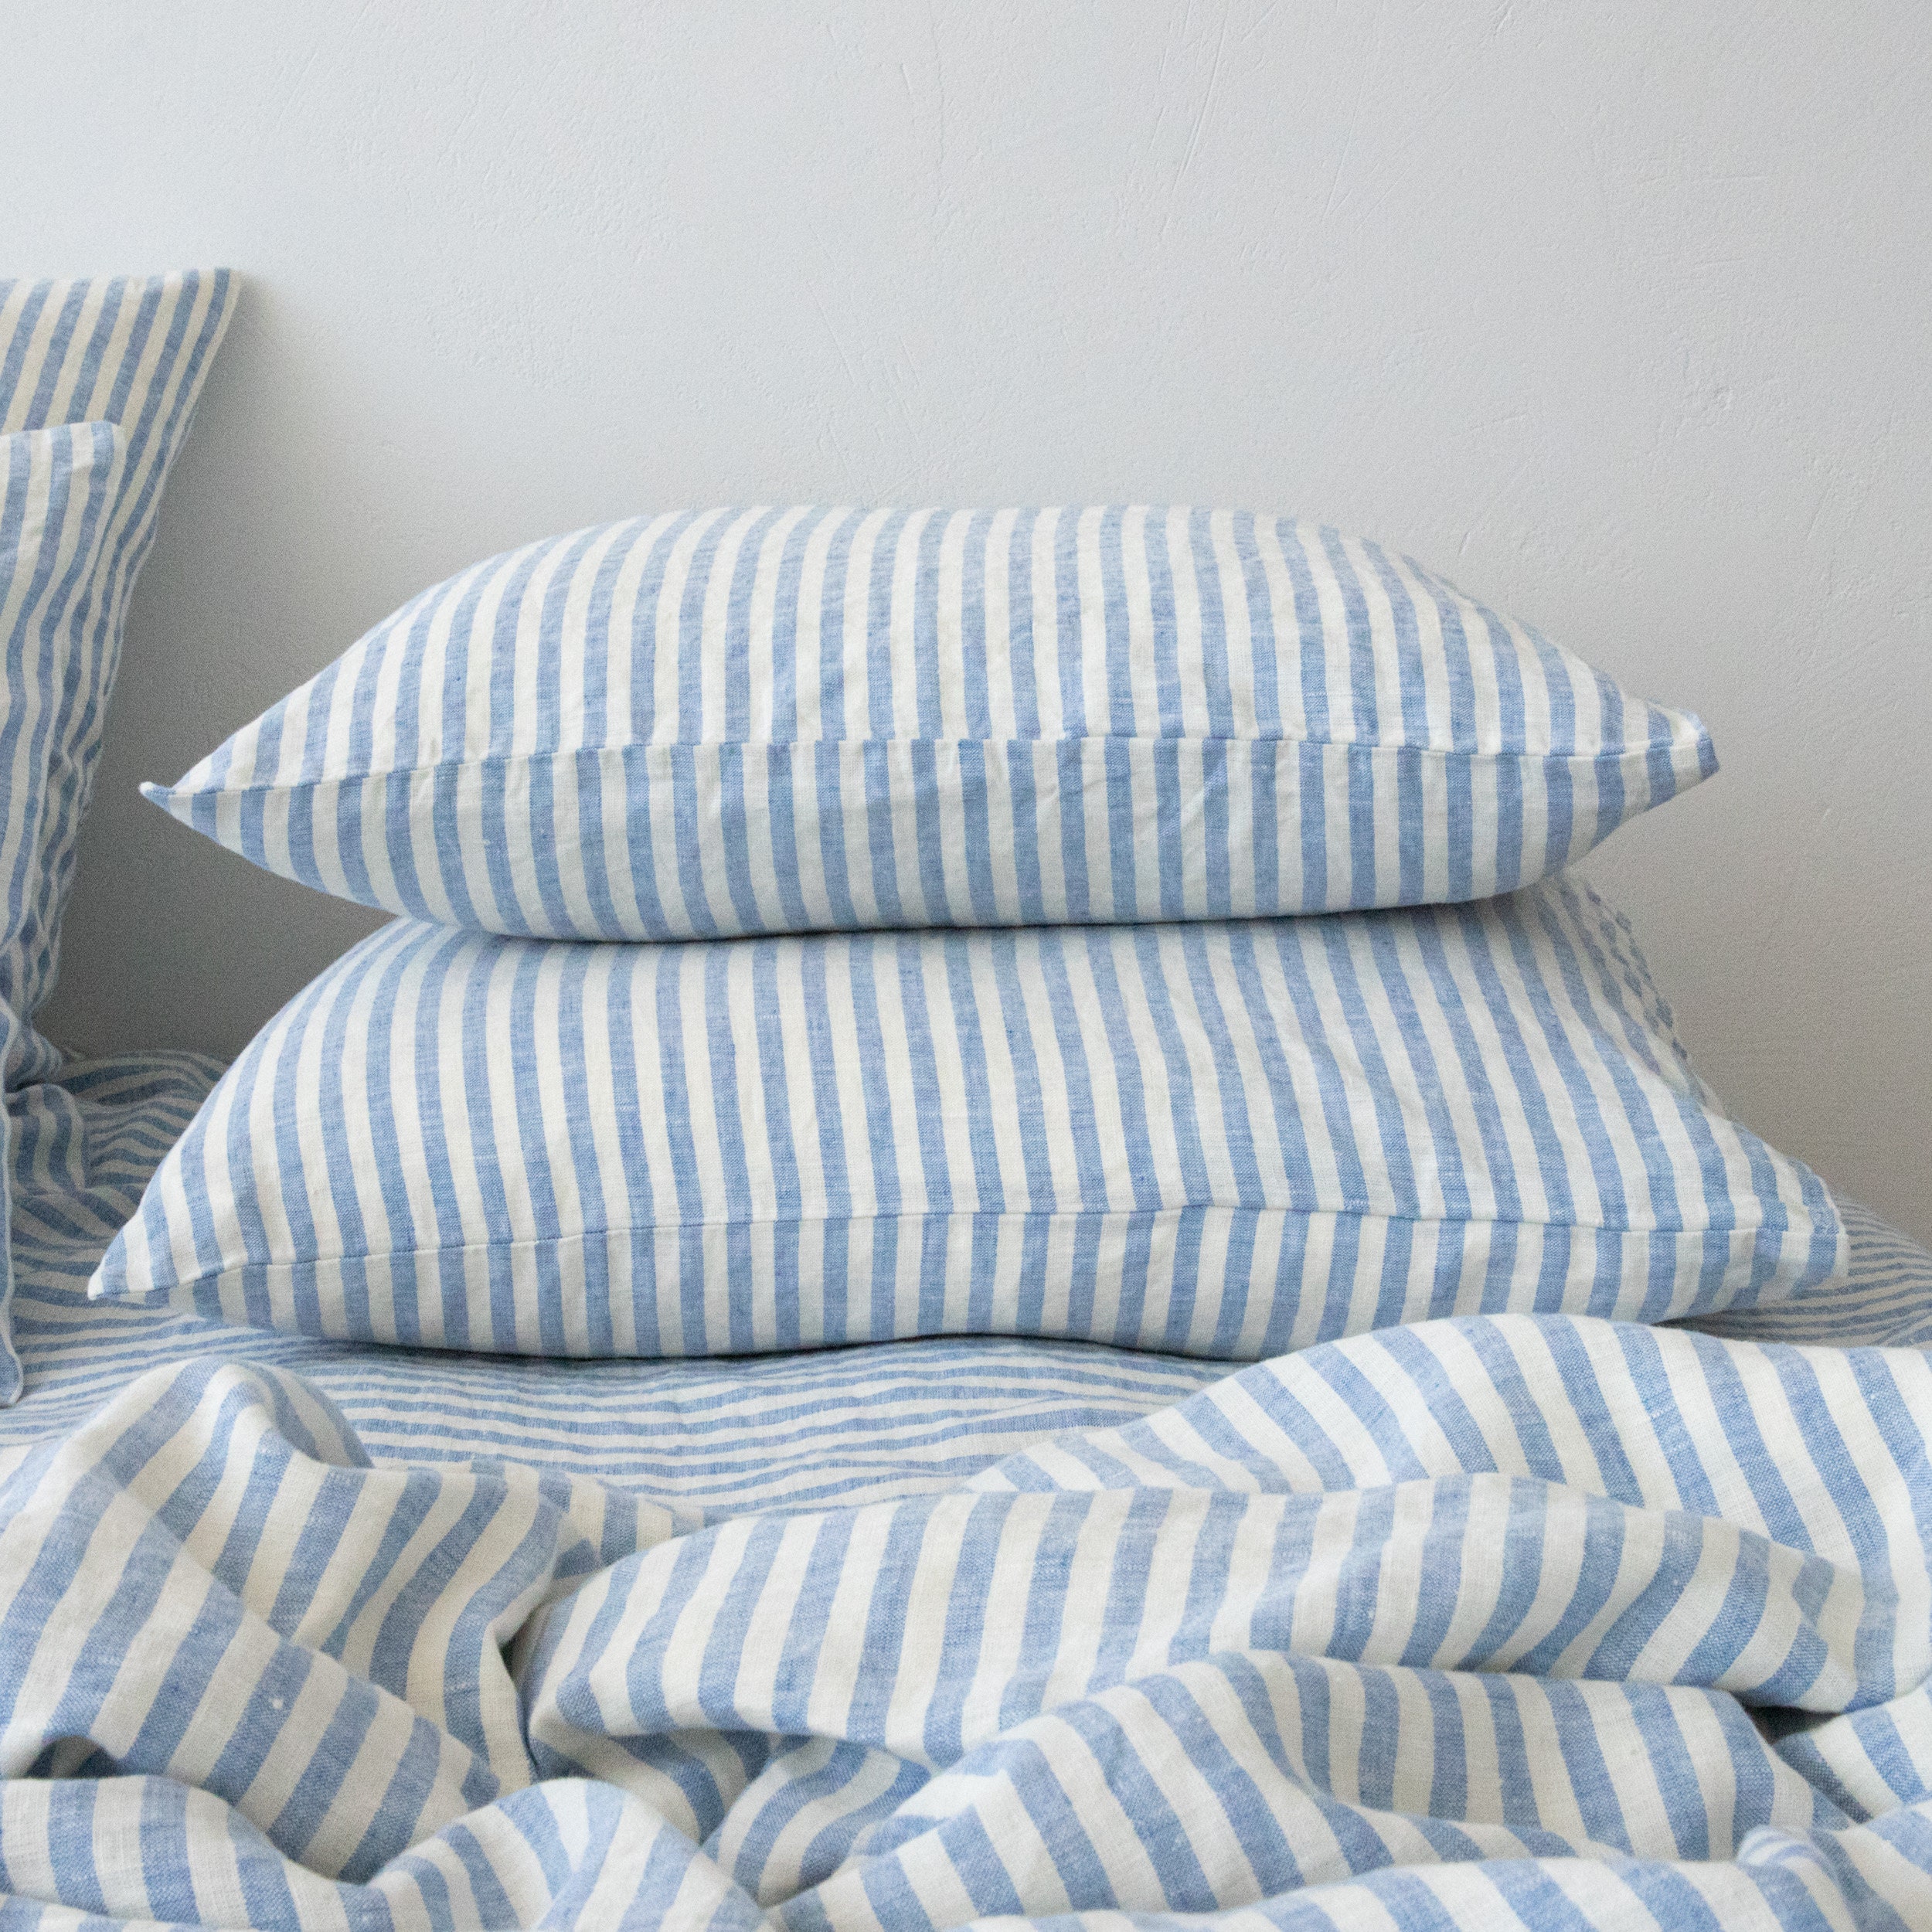 2 Pillowcases for pillows cotton zip 50x80 White Stripe 